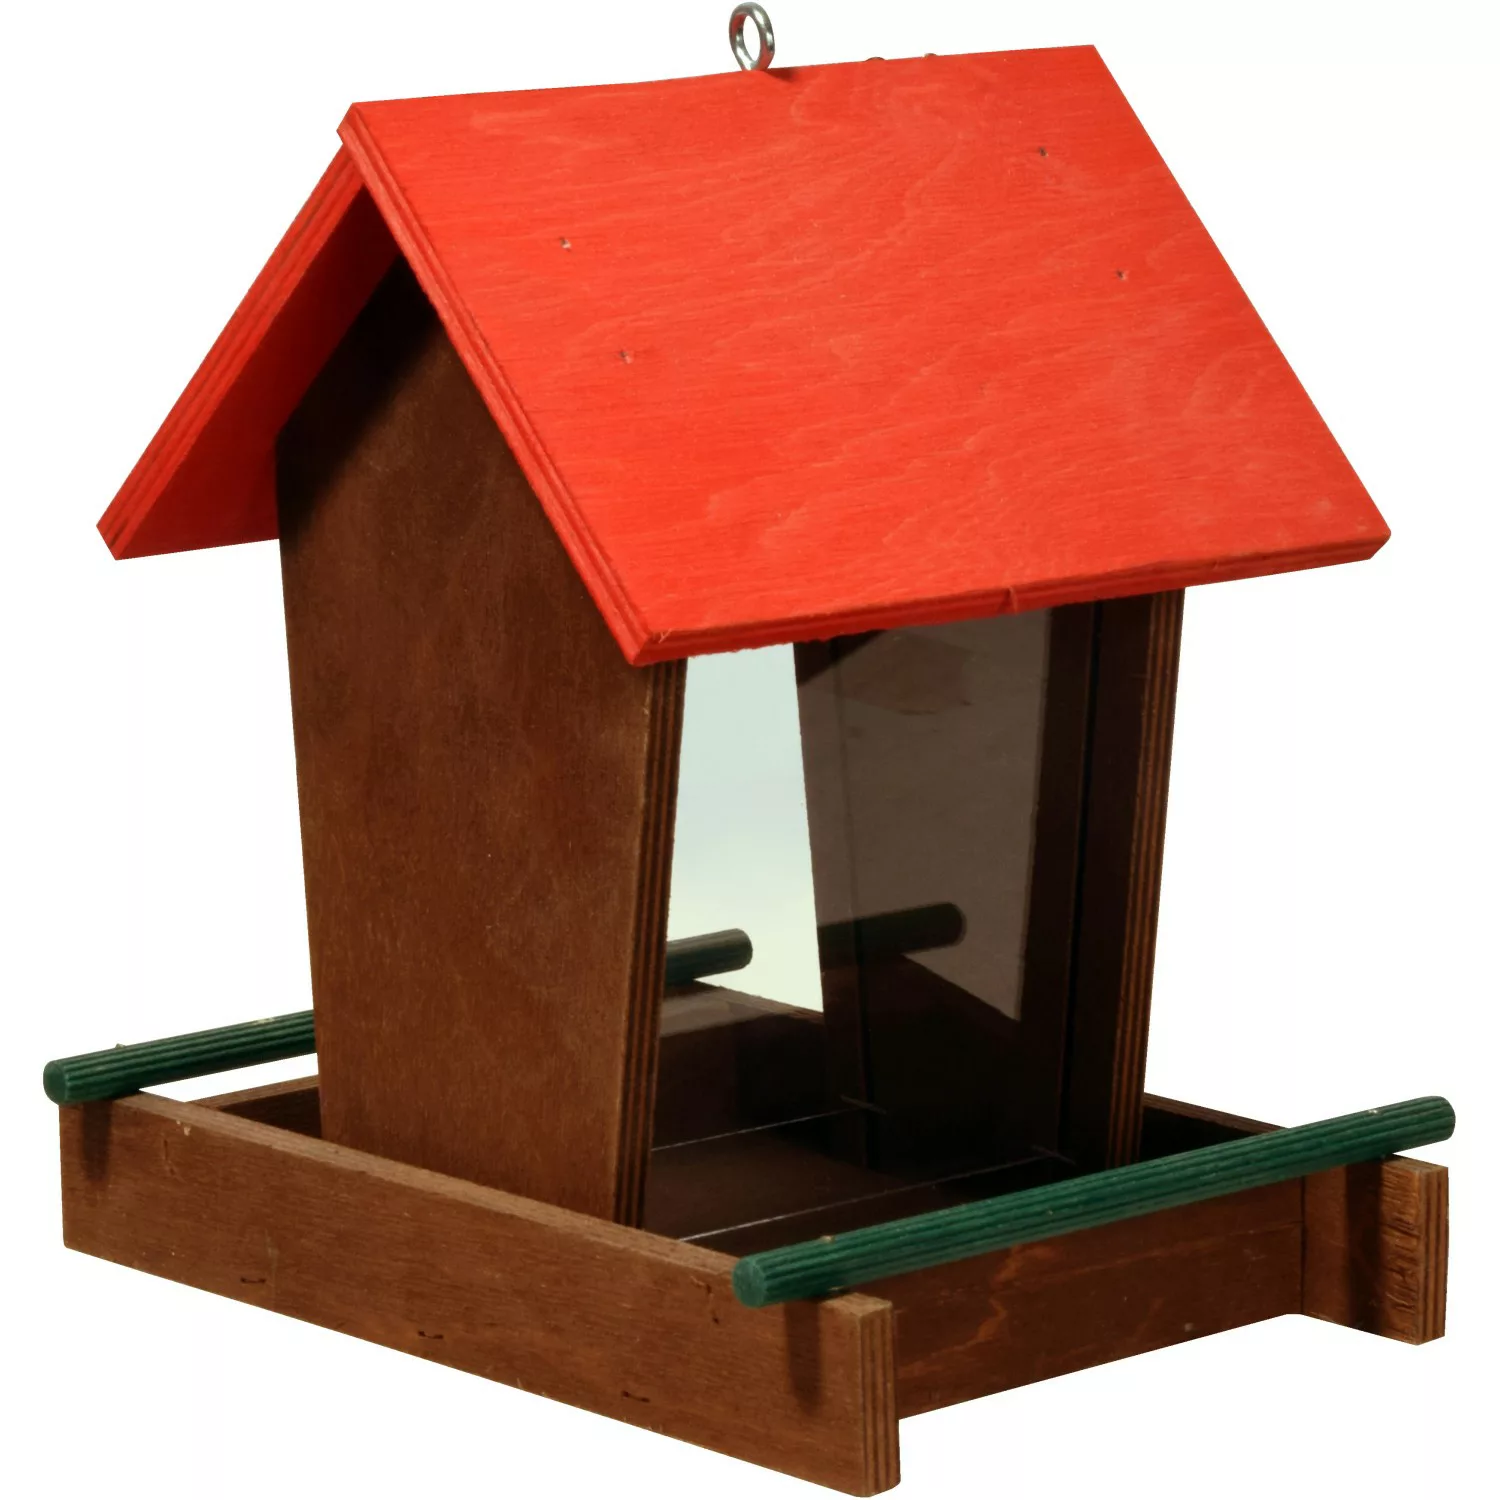 Dobar Vogelhaus mit Acrylglas-Futtersilo 16 cm x 21 cm x 20 cm Braun-Rot günstig online kaufen